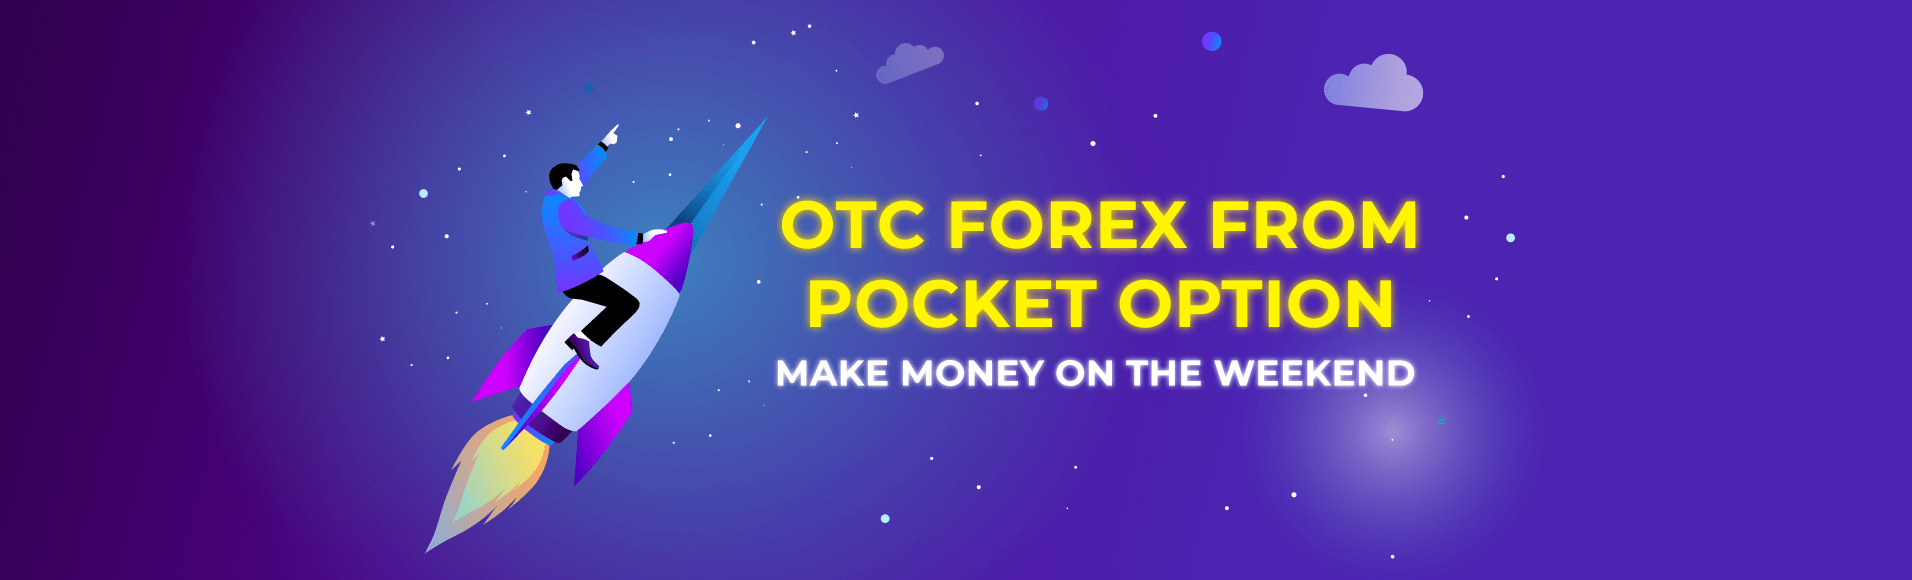 Forex OTC da Pocket Option - ganhe dinheiro no fim de semana